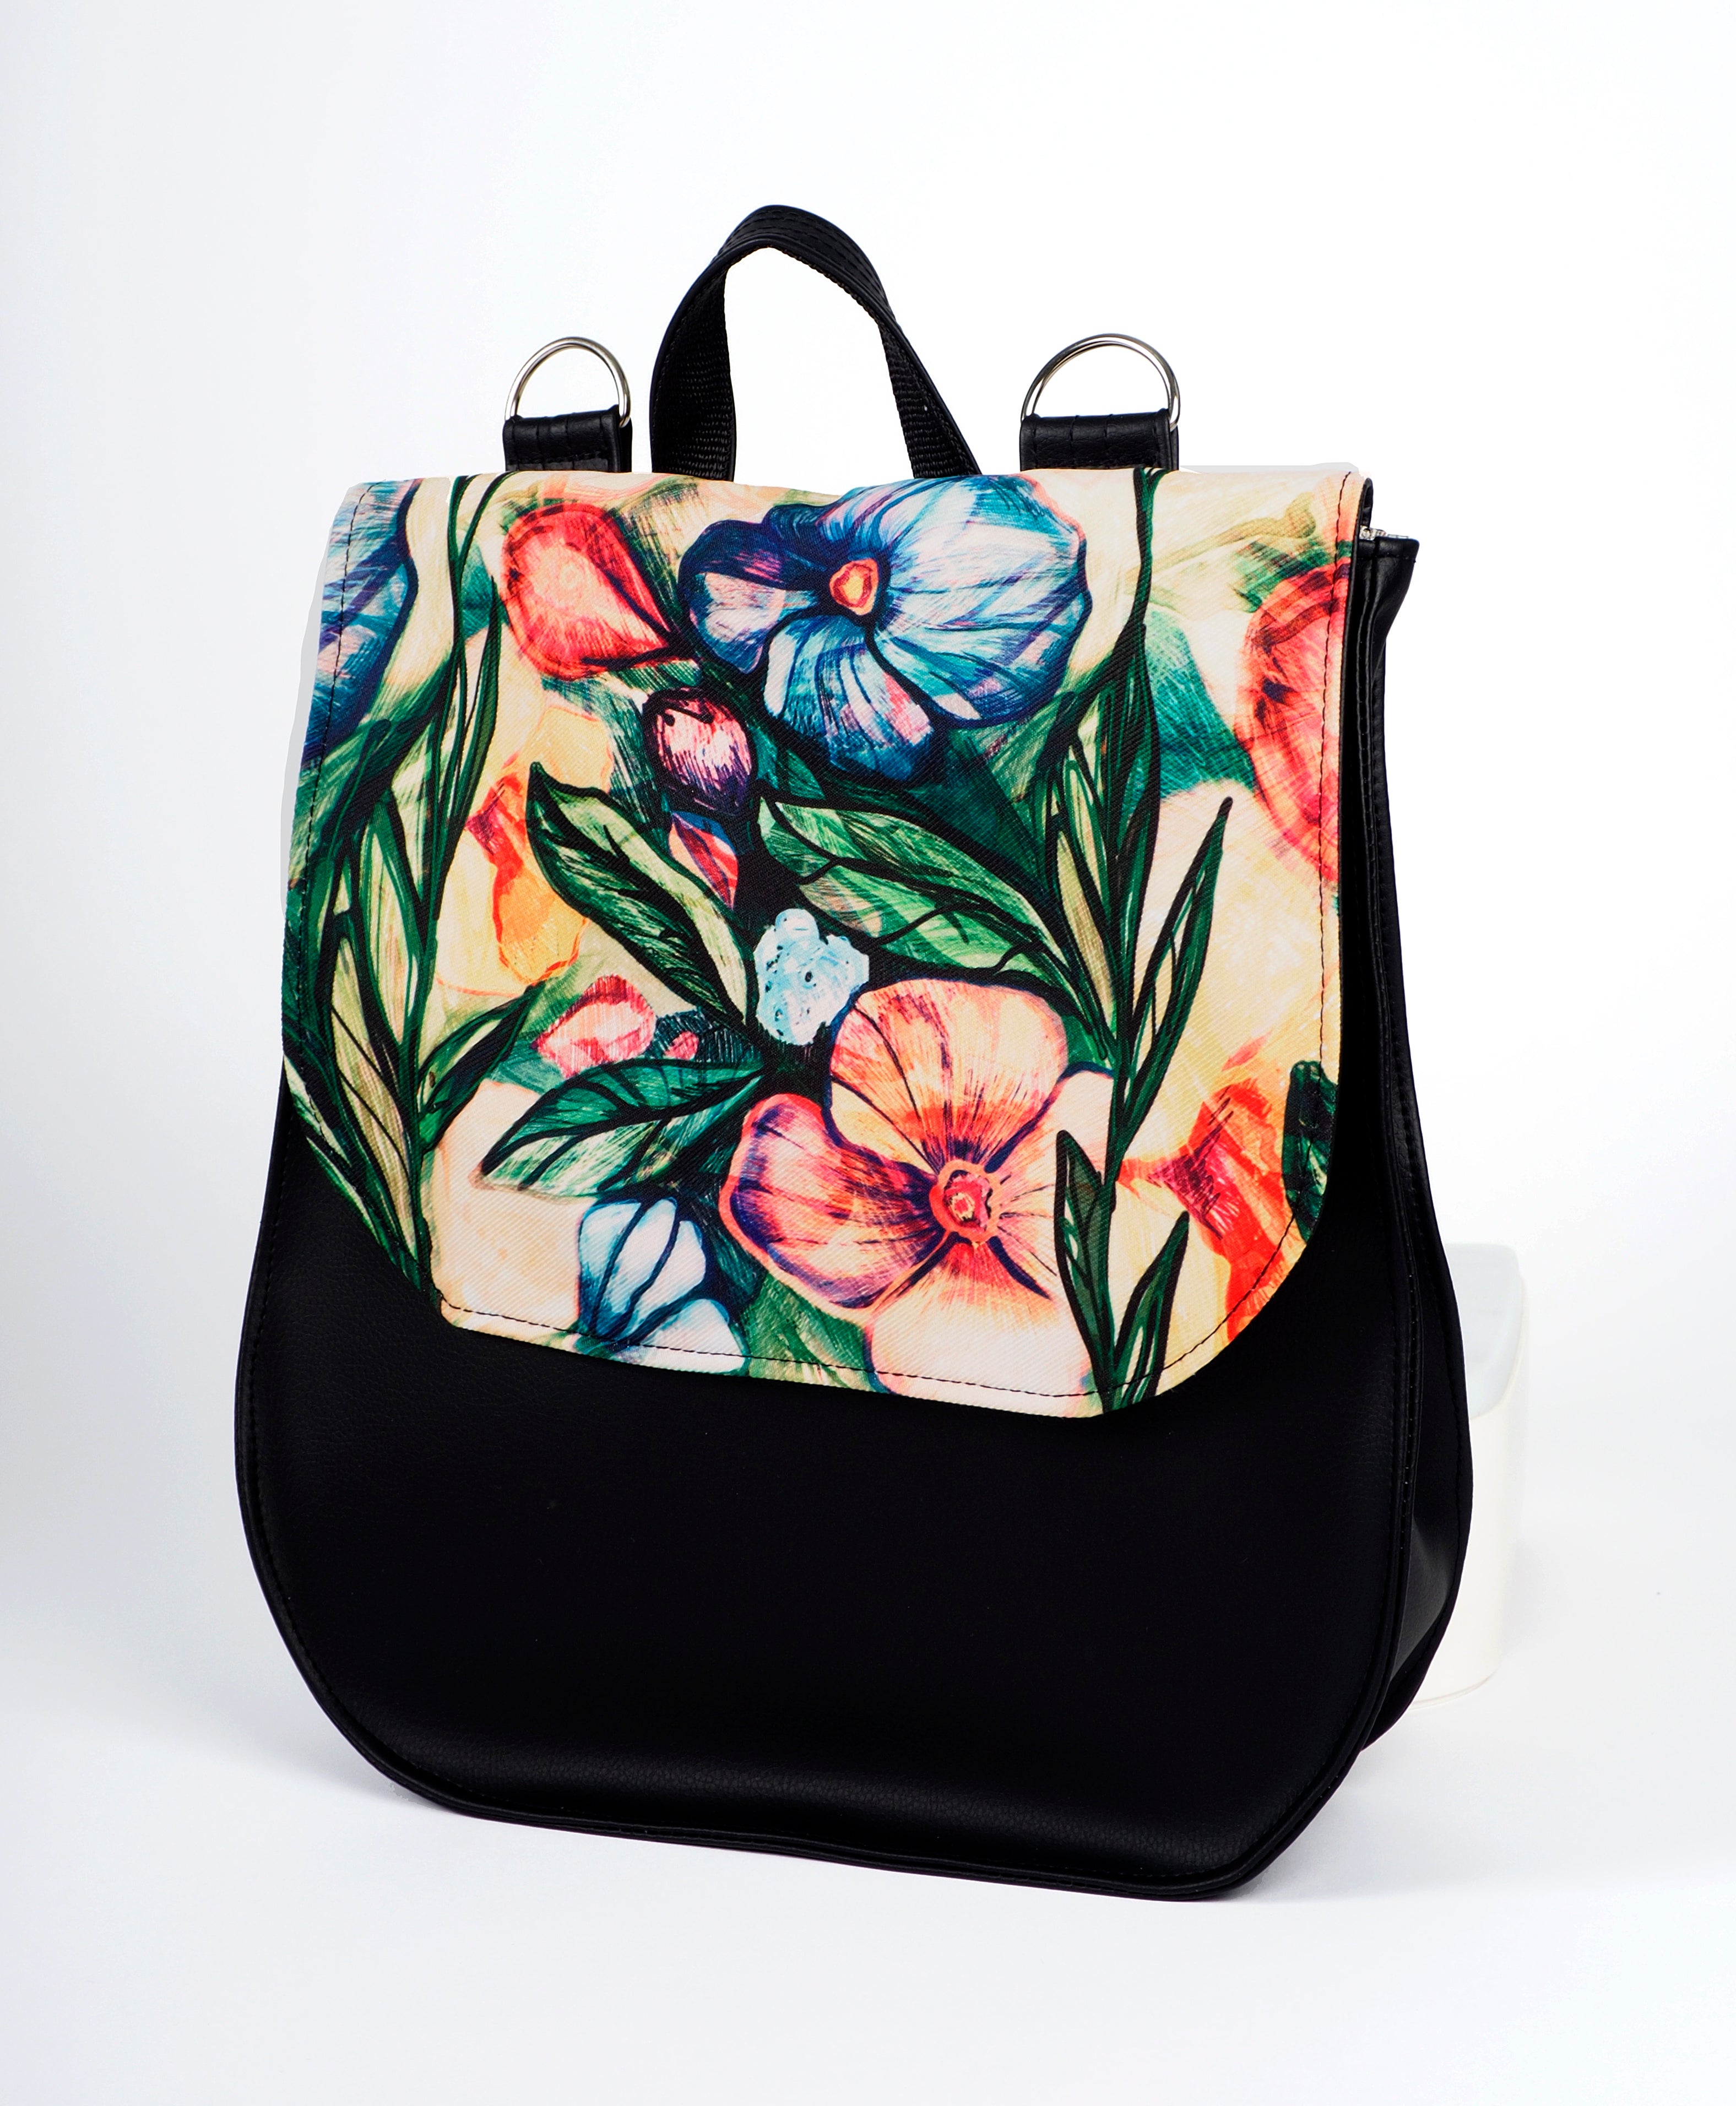 Bardo backpack&bag - Vintage garden - Premium bardo backpack&bag from BARDO ART WORKS - Just lvart bag, backpack, bag, black, floral, flowers, gift, green, handemade, messenger, nature, red, urban style, vegan leather, woman85.00! Shop now at BARDO ART WORKS